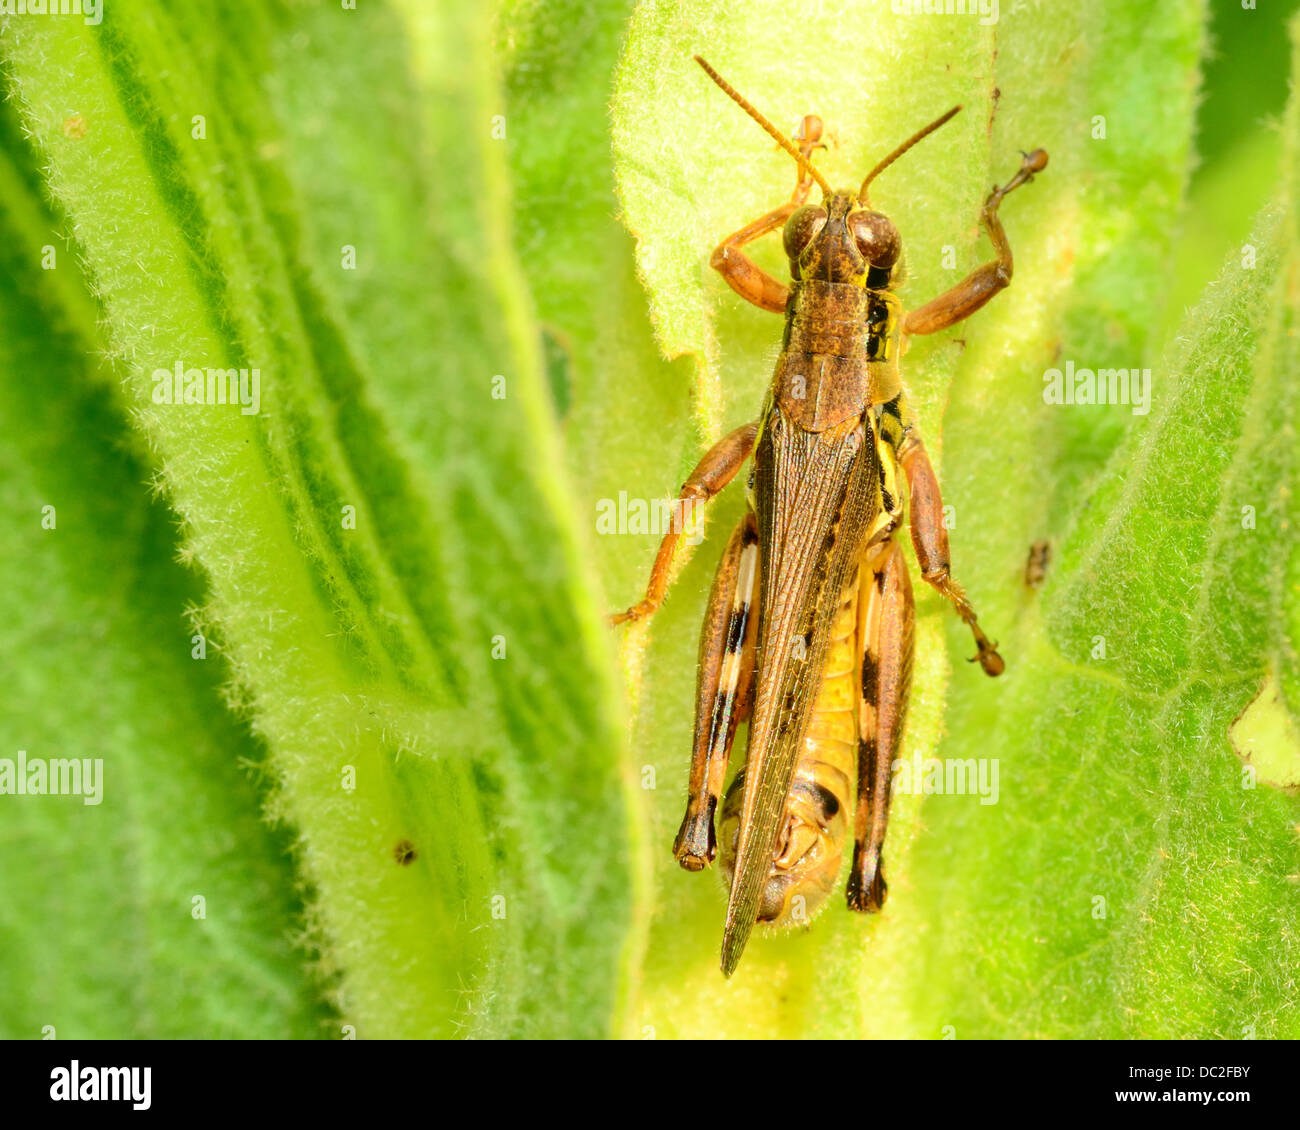 Grasshopper perché sur une tige de la plante verte. Banque D'Images